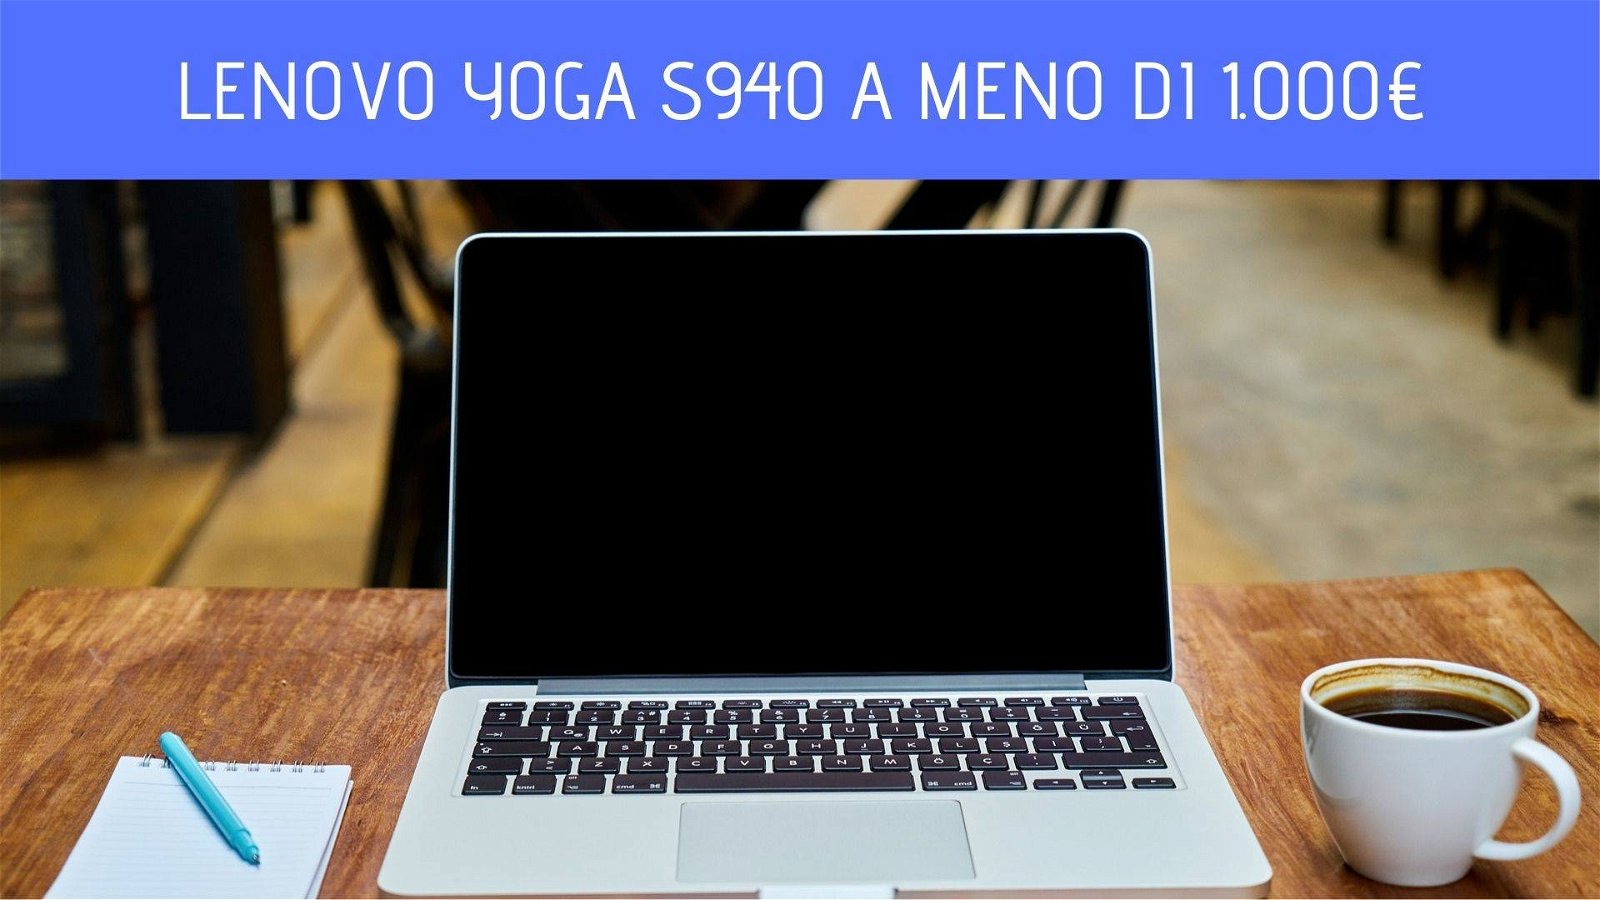 Immagine di Lenovo Yoga S940: 500 euro di sconto su Amazon!